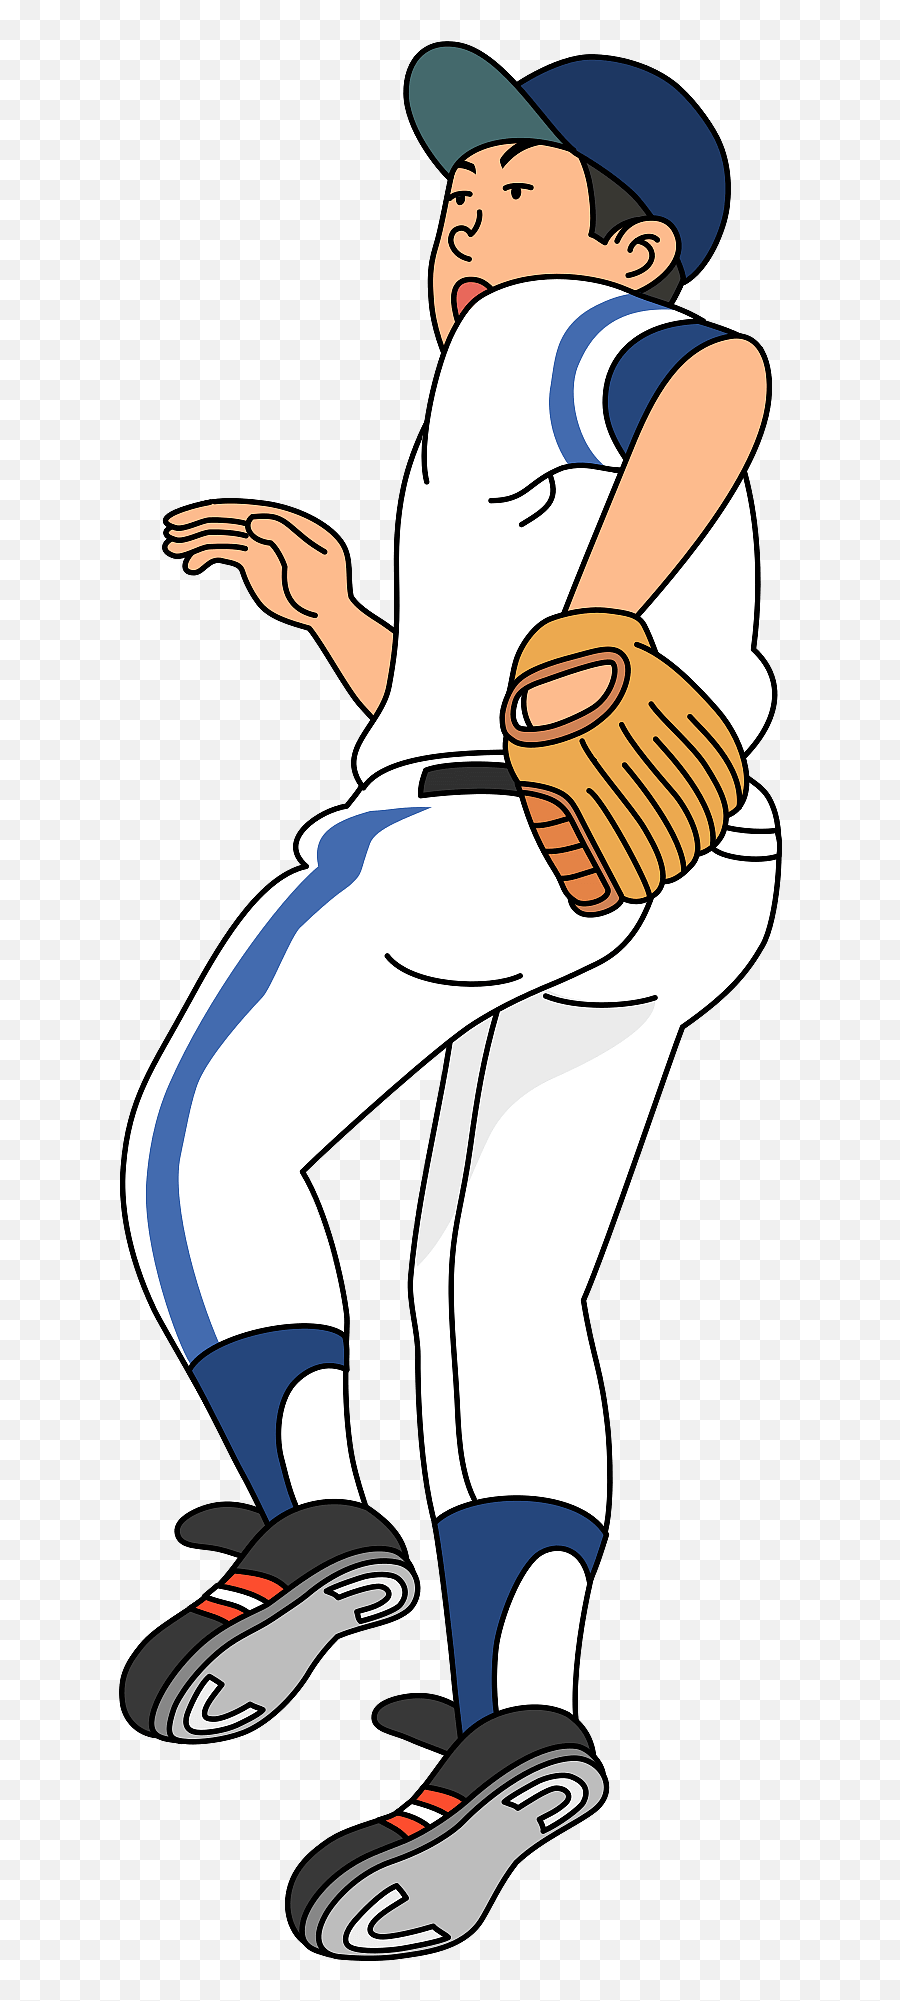 Baseball Player Clipart - Baseball Glove Emoji,Baseball Player Clipart